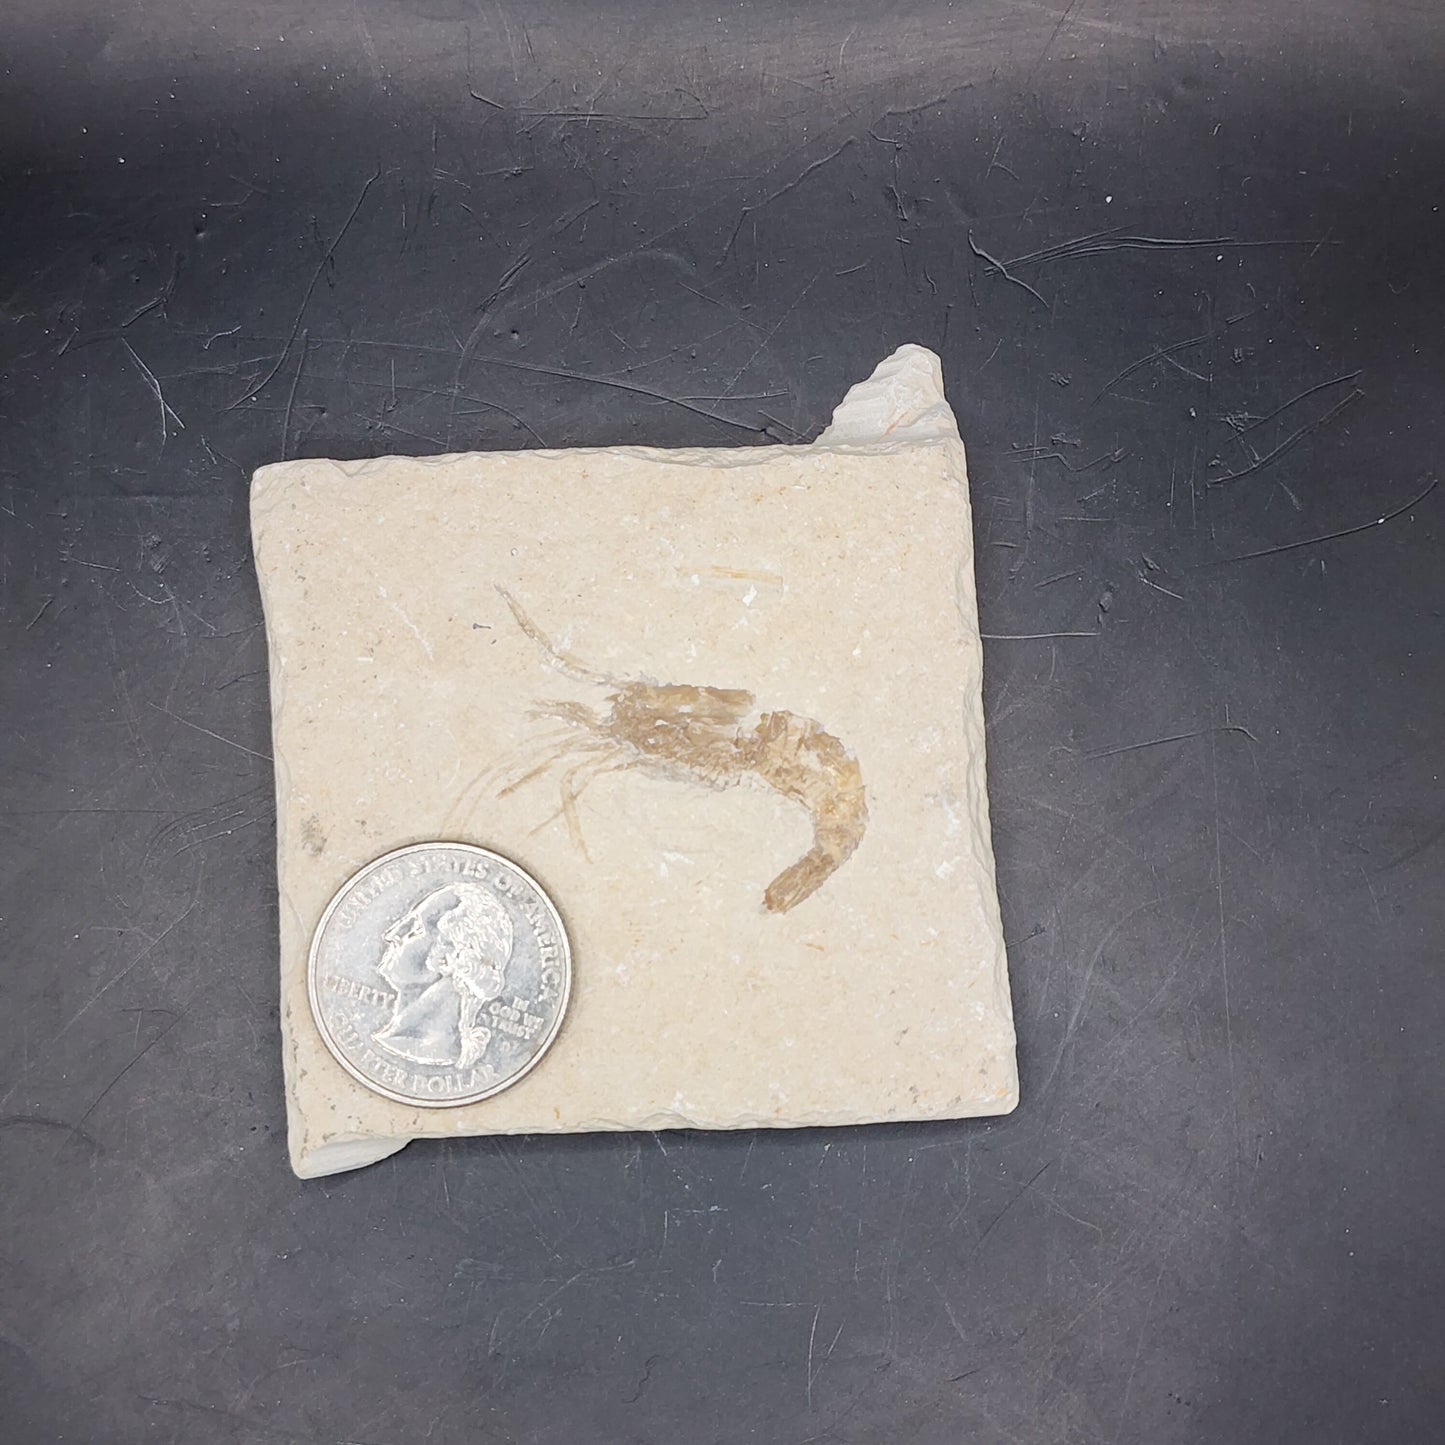 Great Shrimp Fossil (Carpopenaeus)